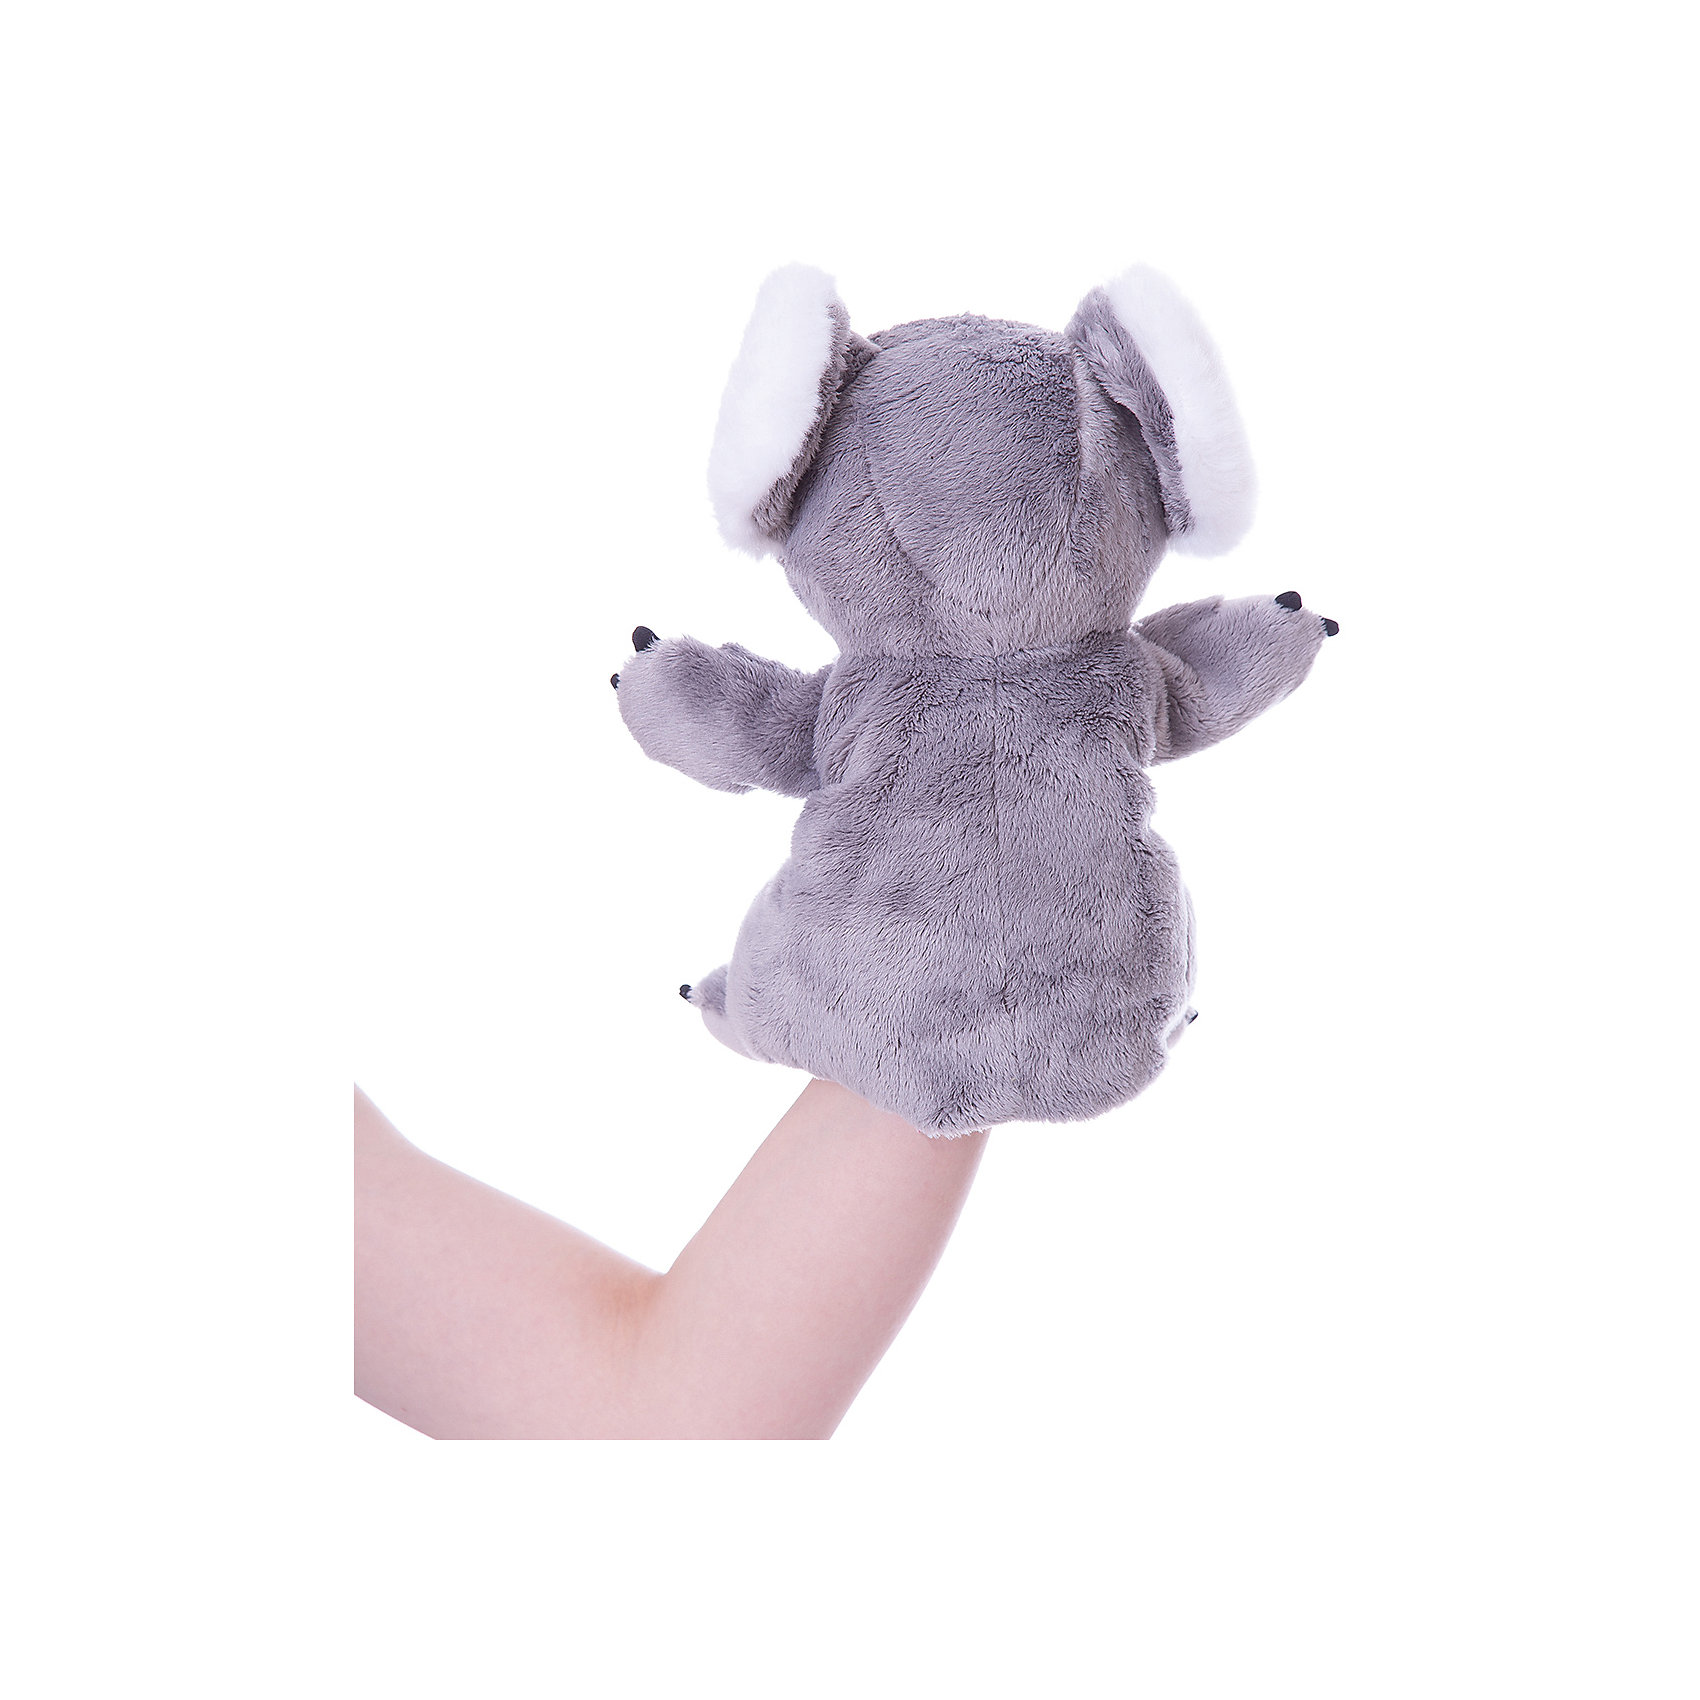 Коала рука. Trudi коала 24 см. Мягкая игрушка Trudi коала 15 см. Мягкая игрушка Maxitoys Luxury Slim, коала 33 см. Игрушка на руку мышка, 25 см.